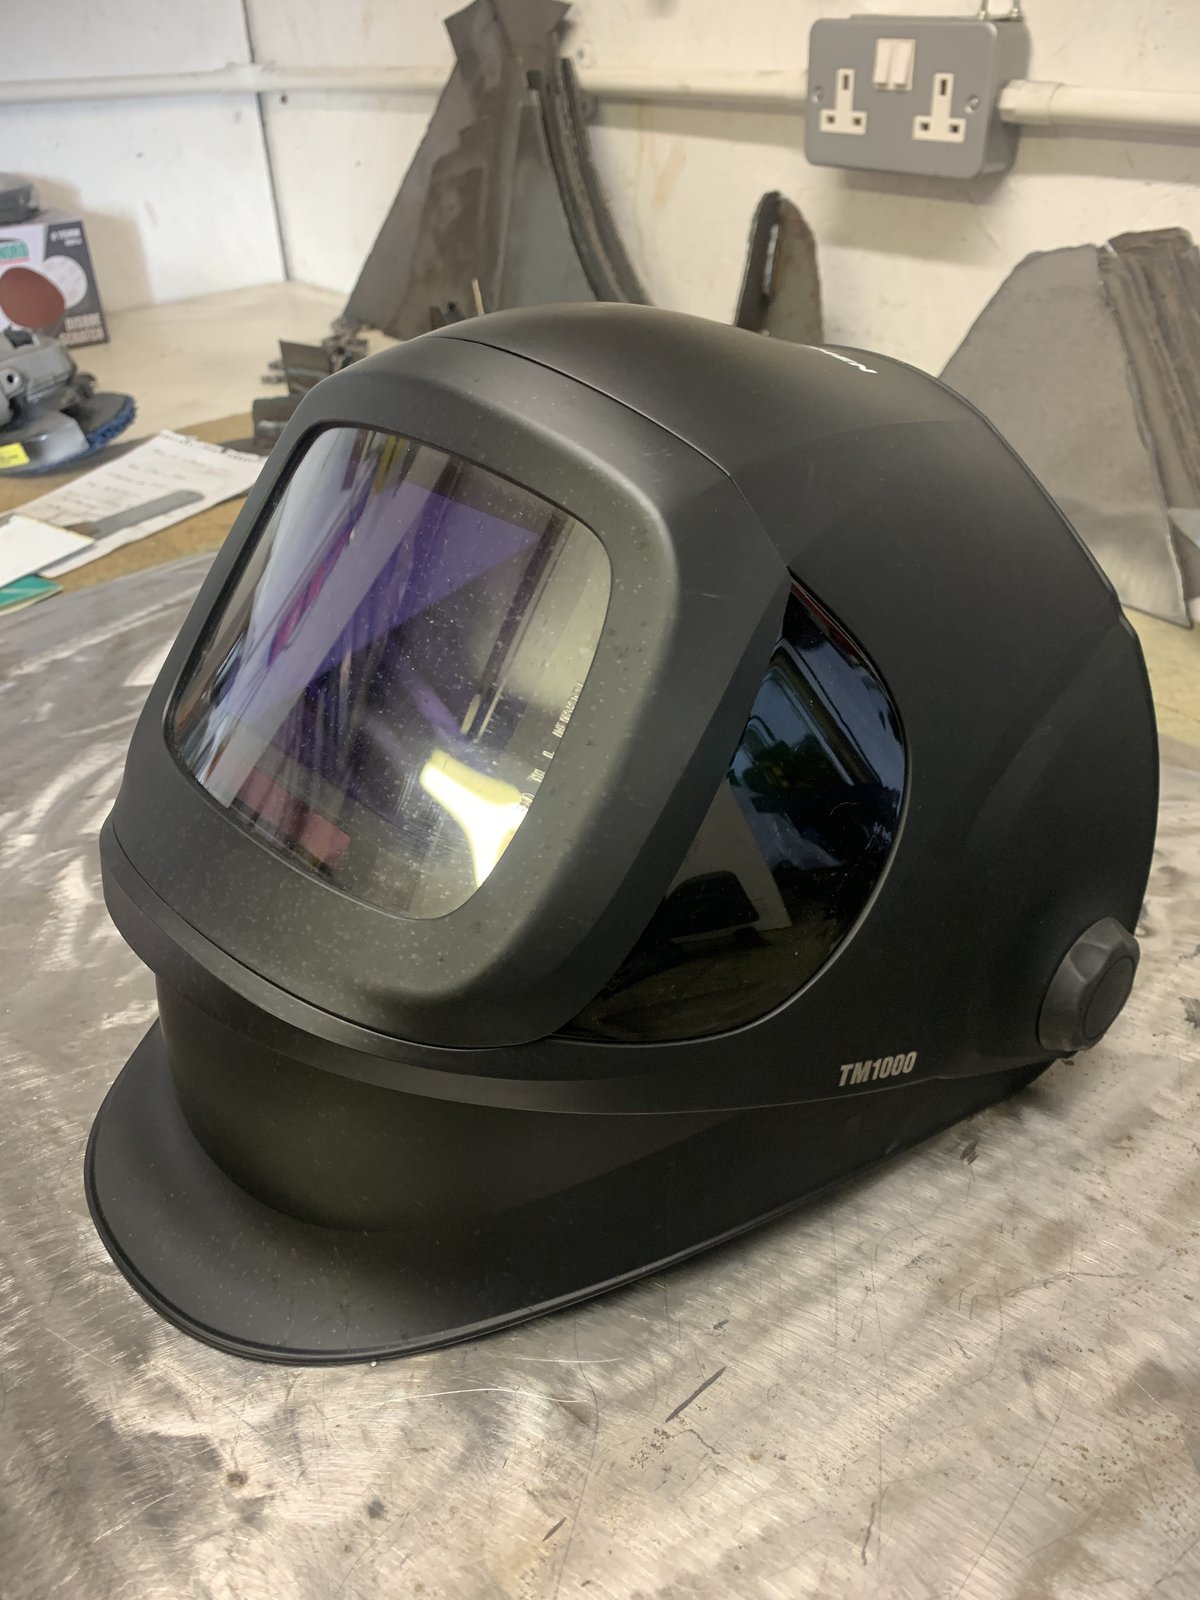  TM1000 Helmet | MIG Welding Forum